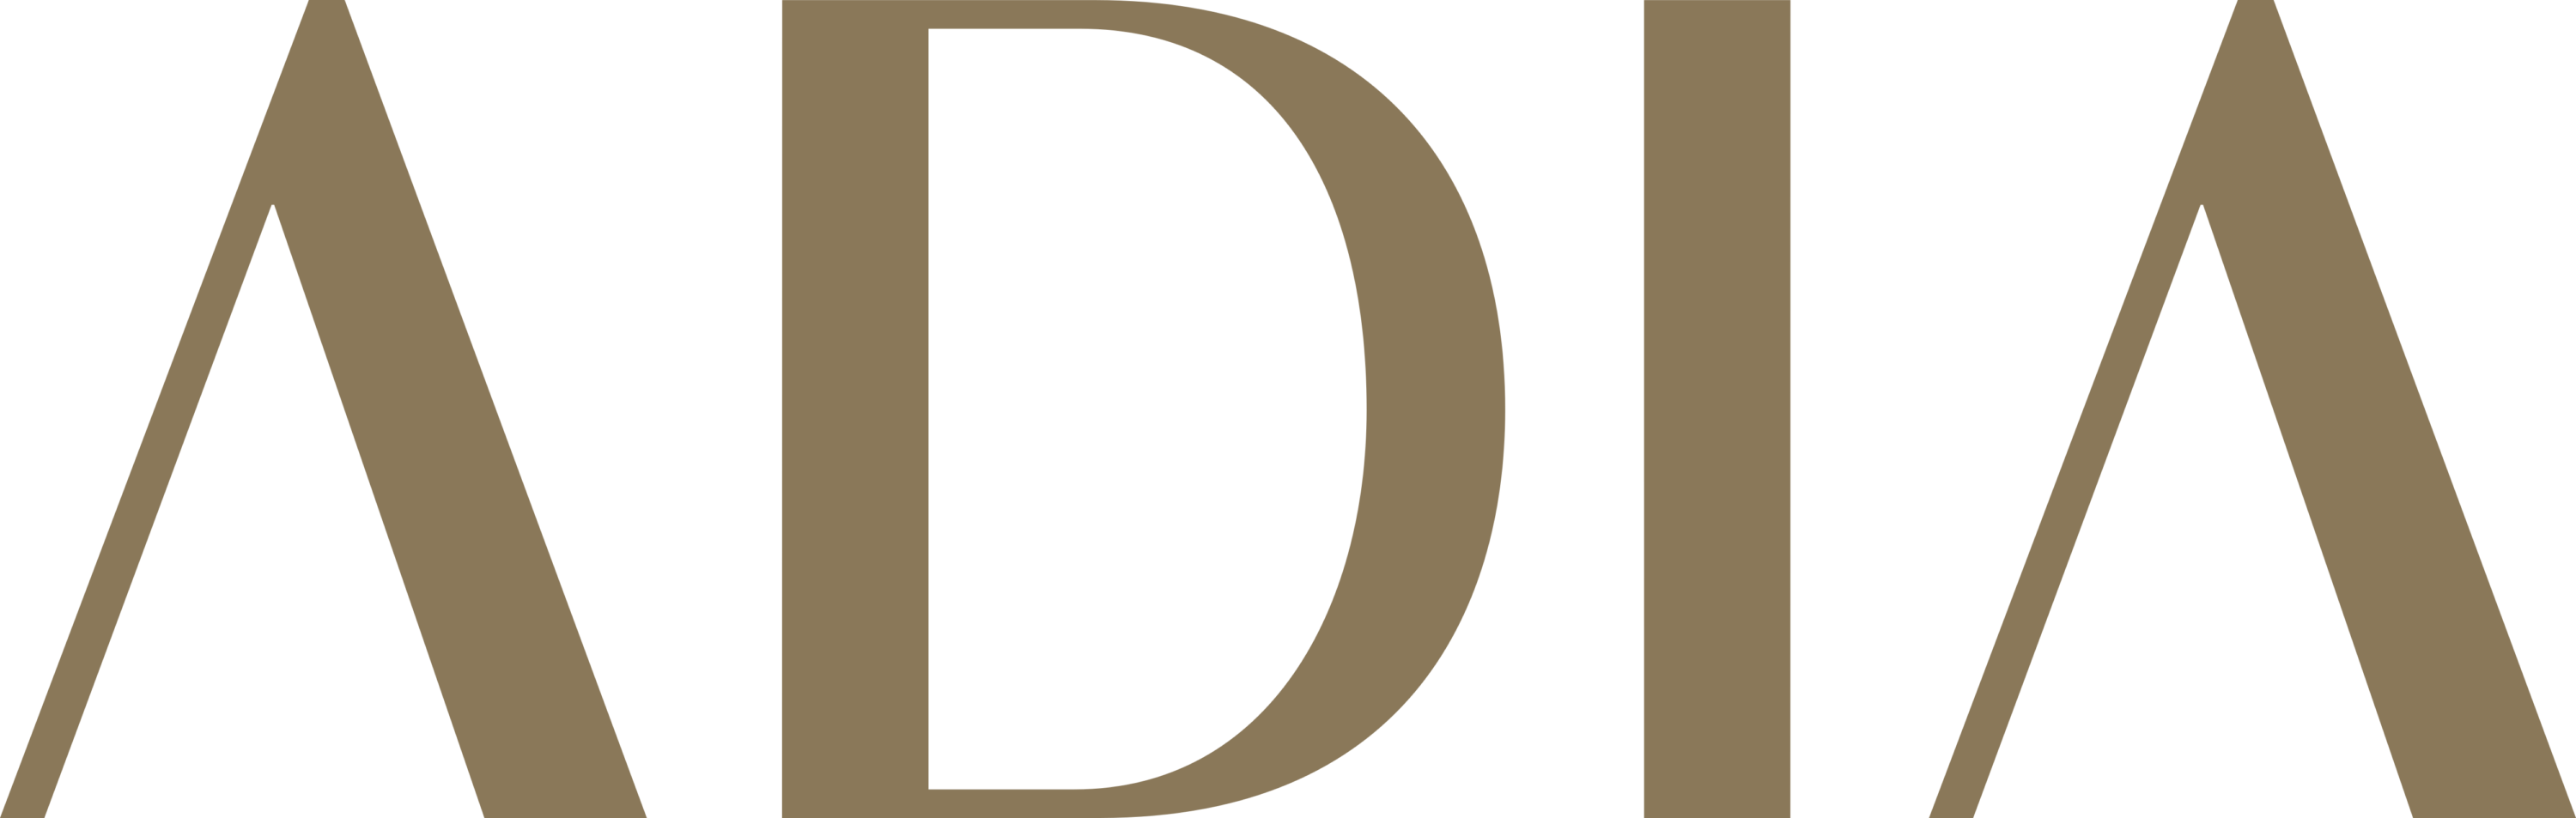 Abu Dhabi Investment Authority Logo